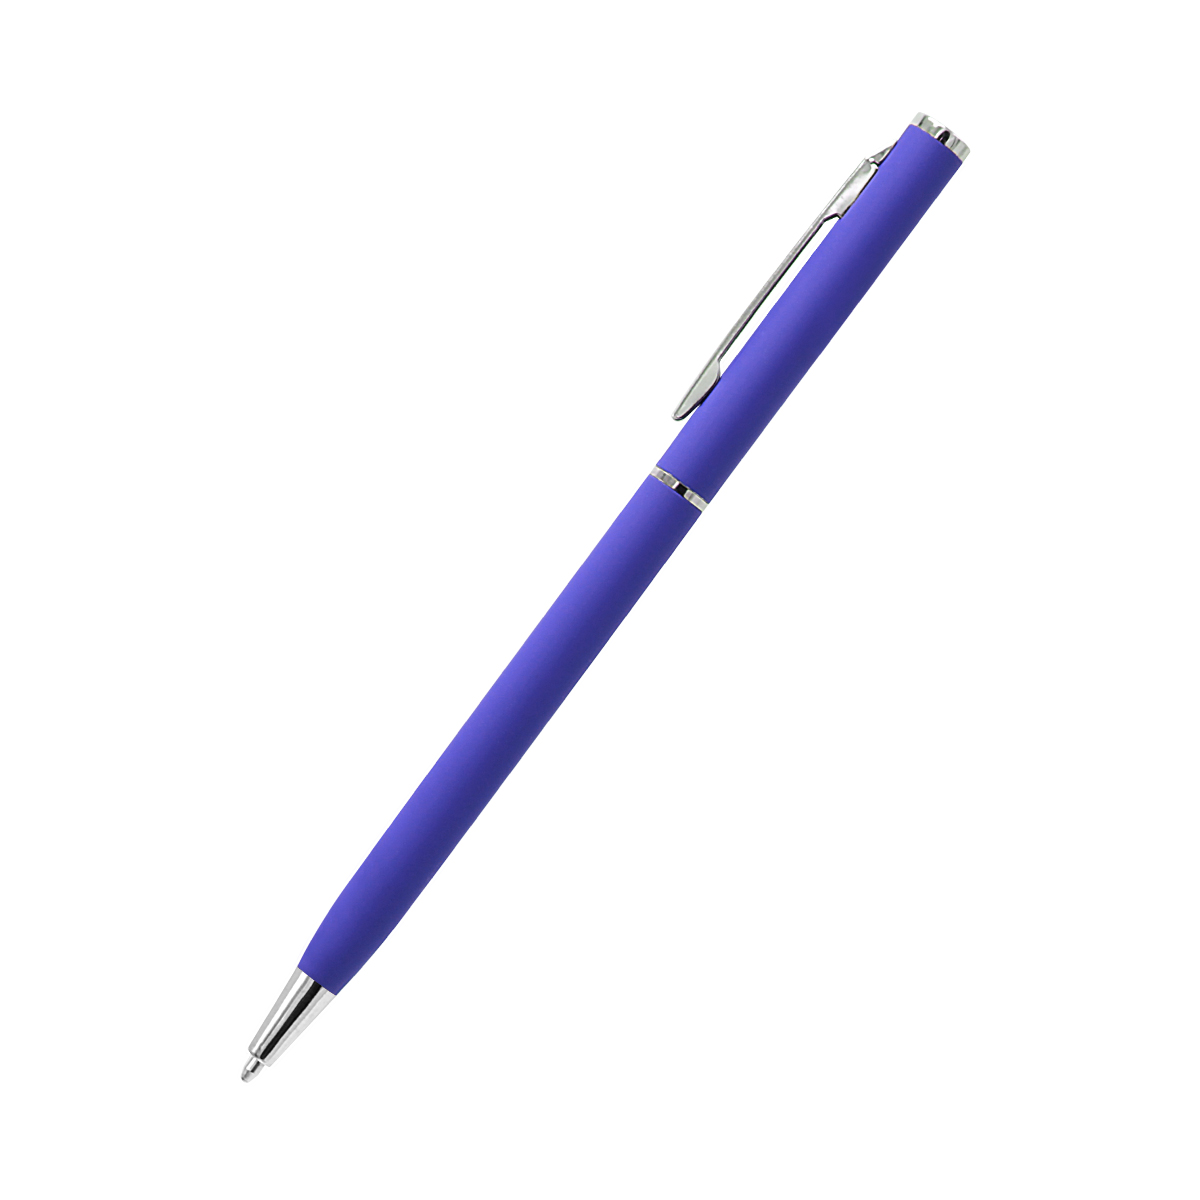 Ручка металлическая Tinny Soft